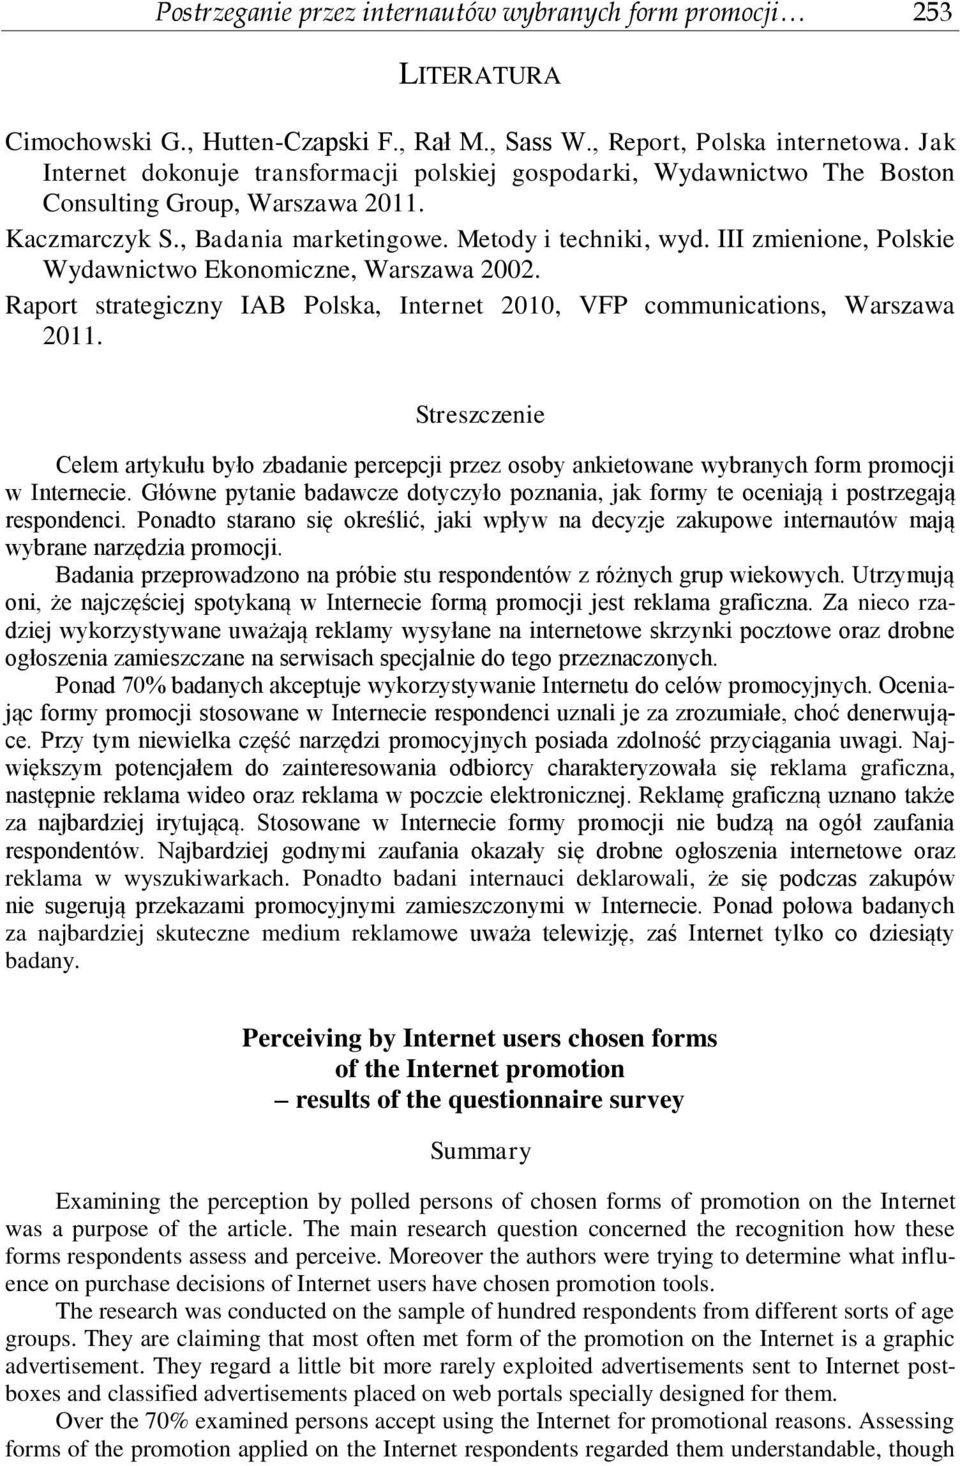 III zmienione, Polskie Wydawnictwo Ekonomiczne, Warszawa 2002. Raport strategiczny IAB Polska, Internet 2010, VFP communications, Warszawa 2011.